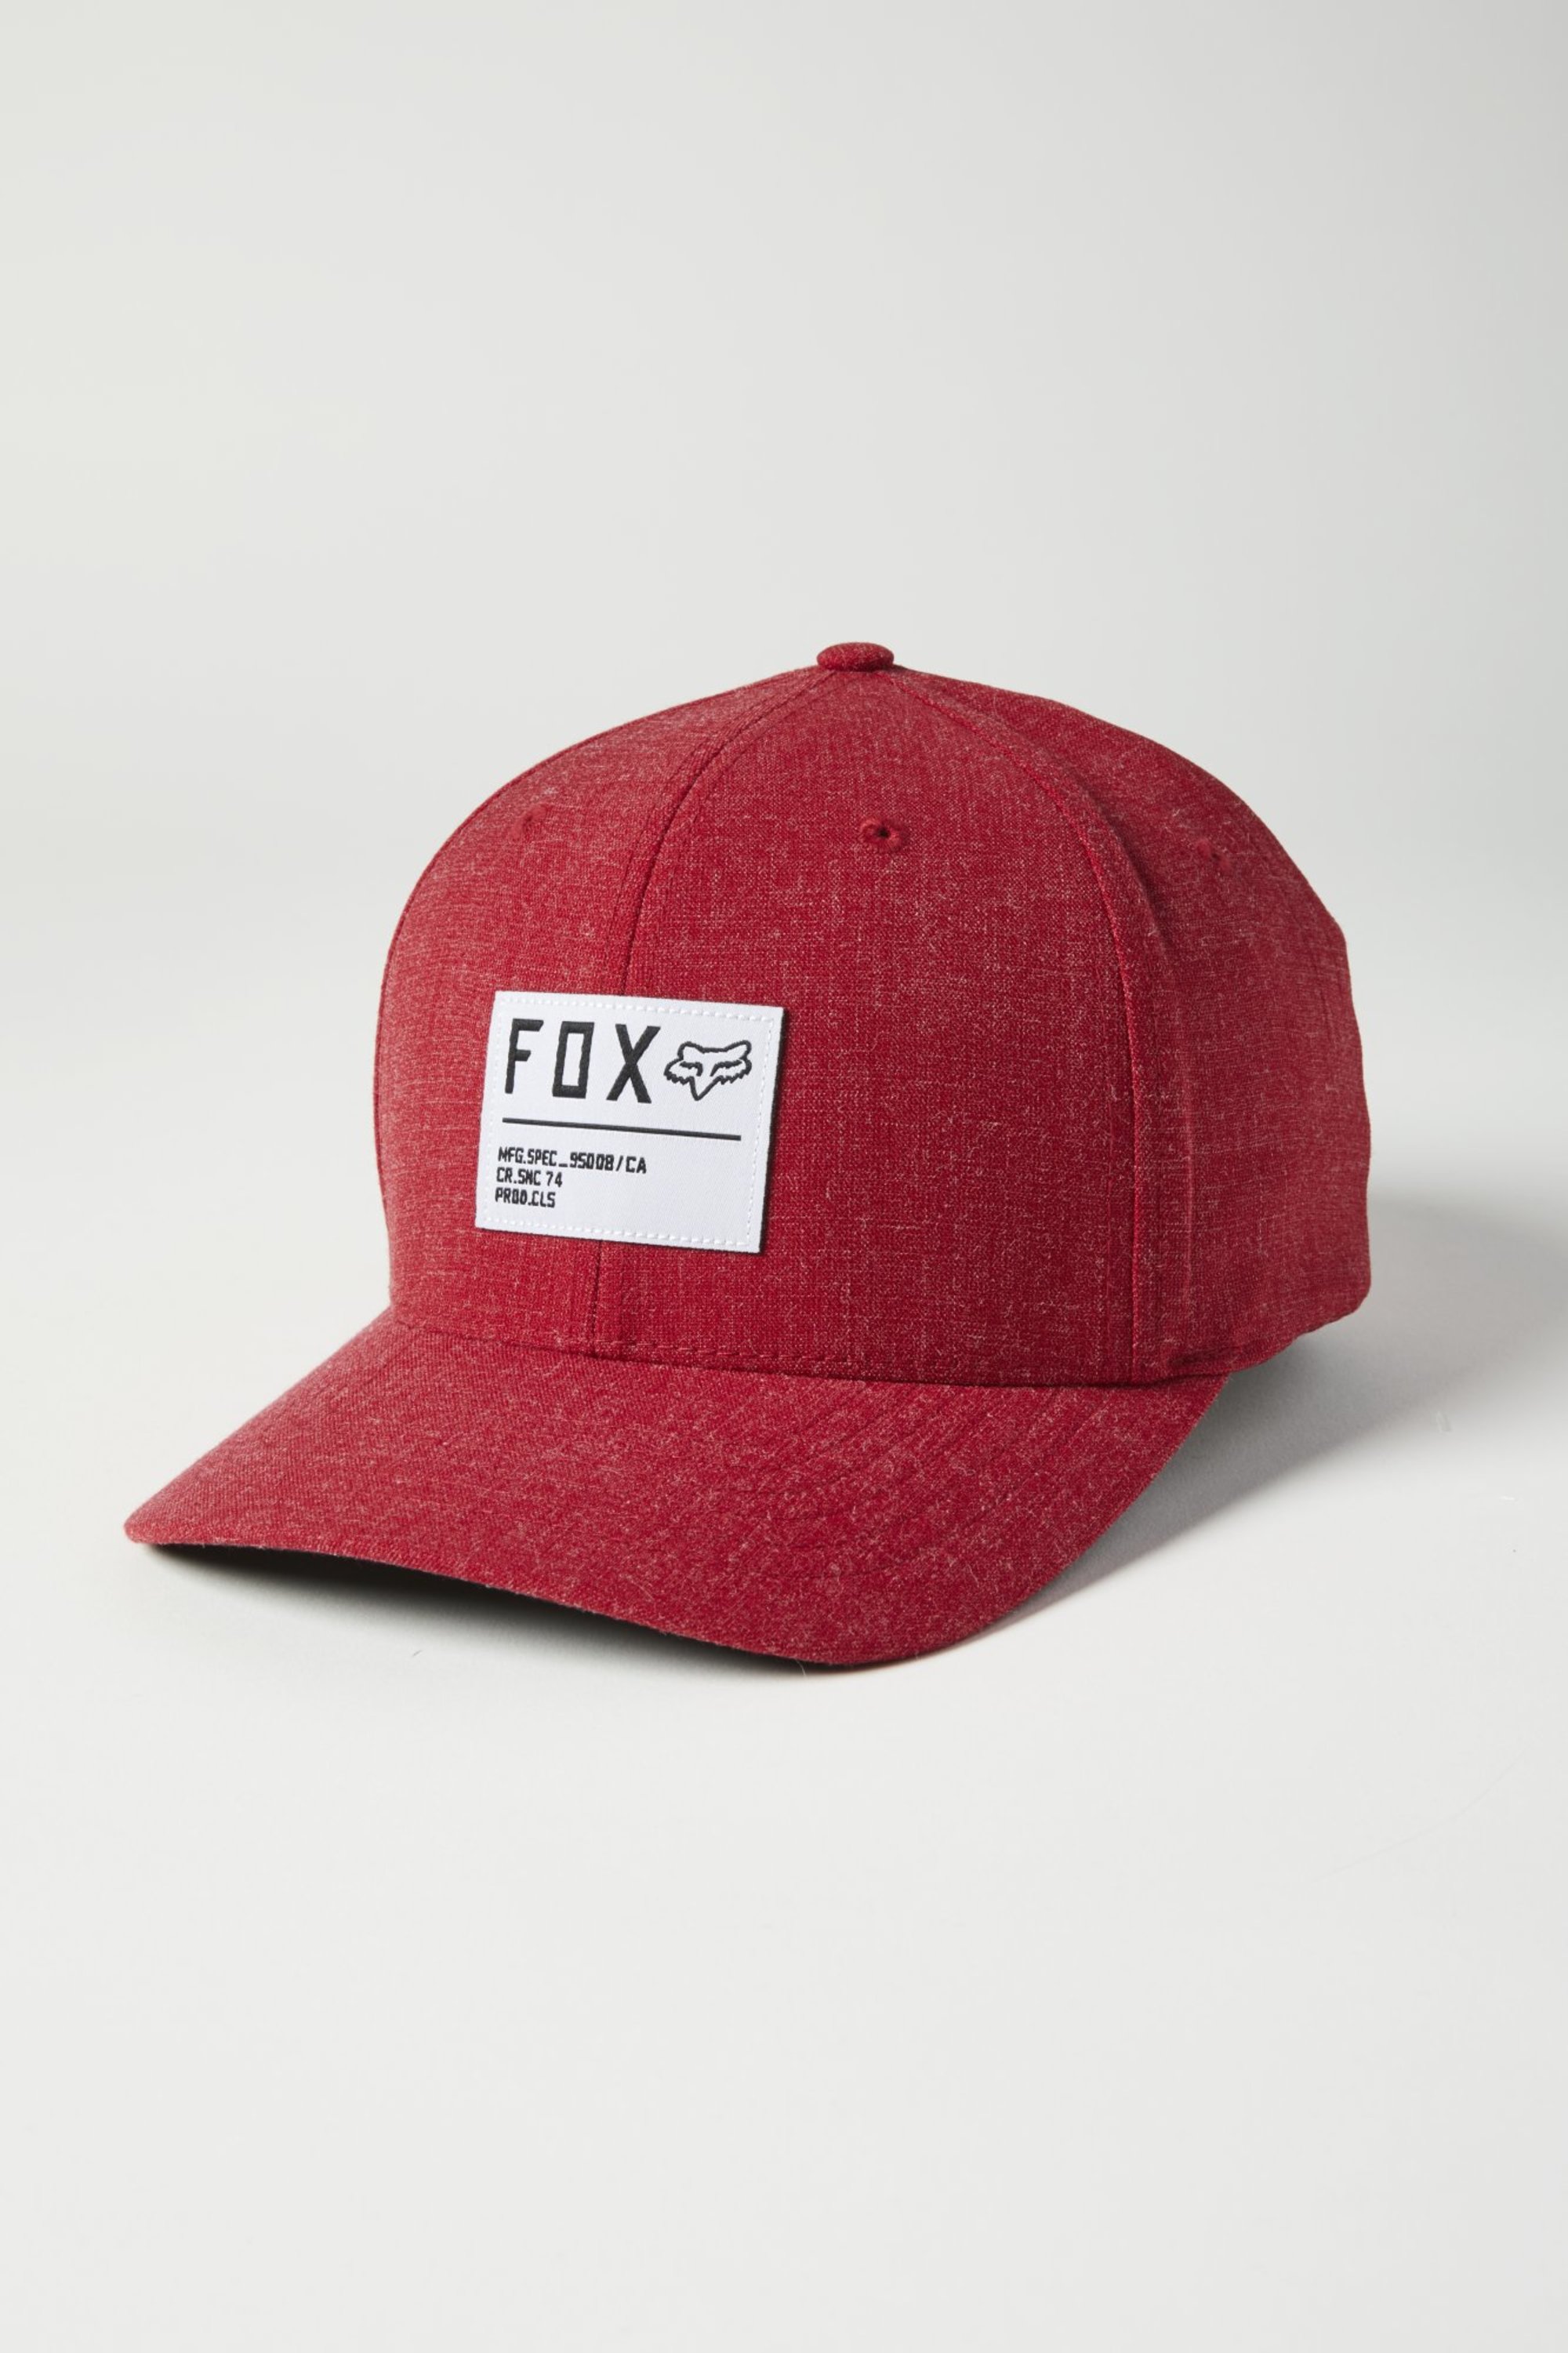 mode hommes casquettes flexfit par fox racing men non stop